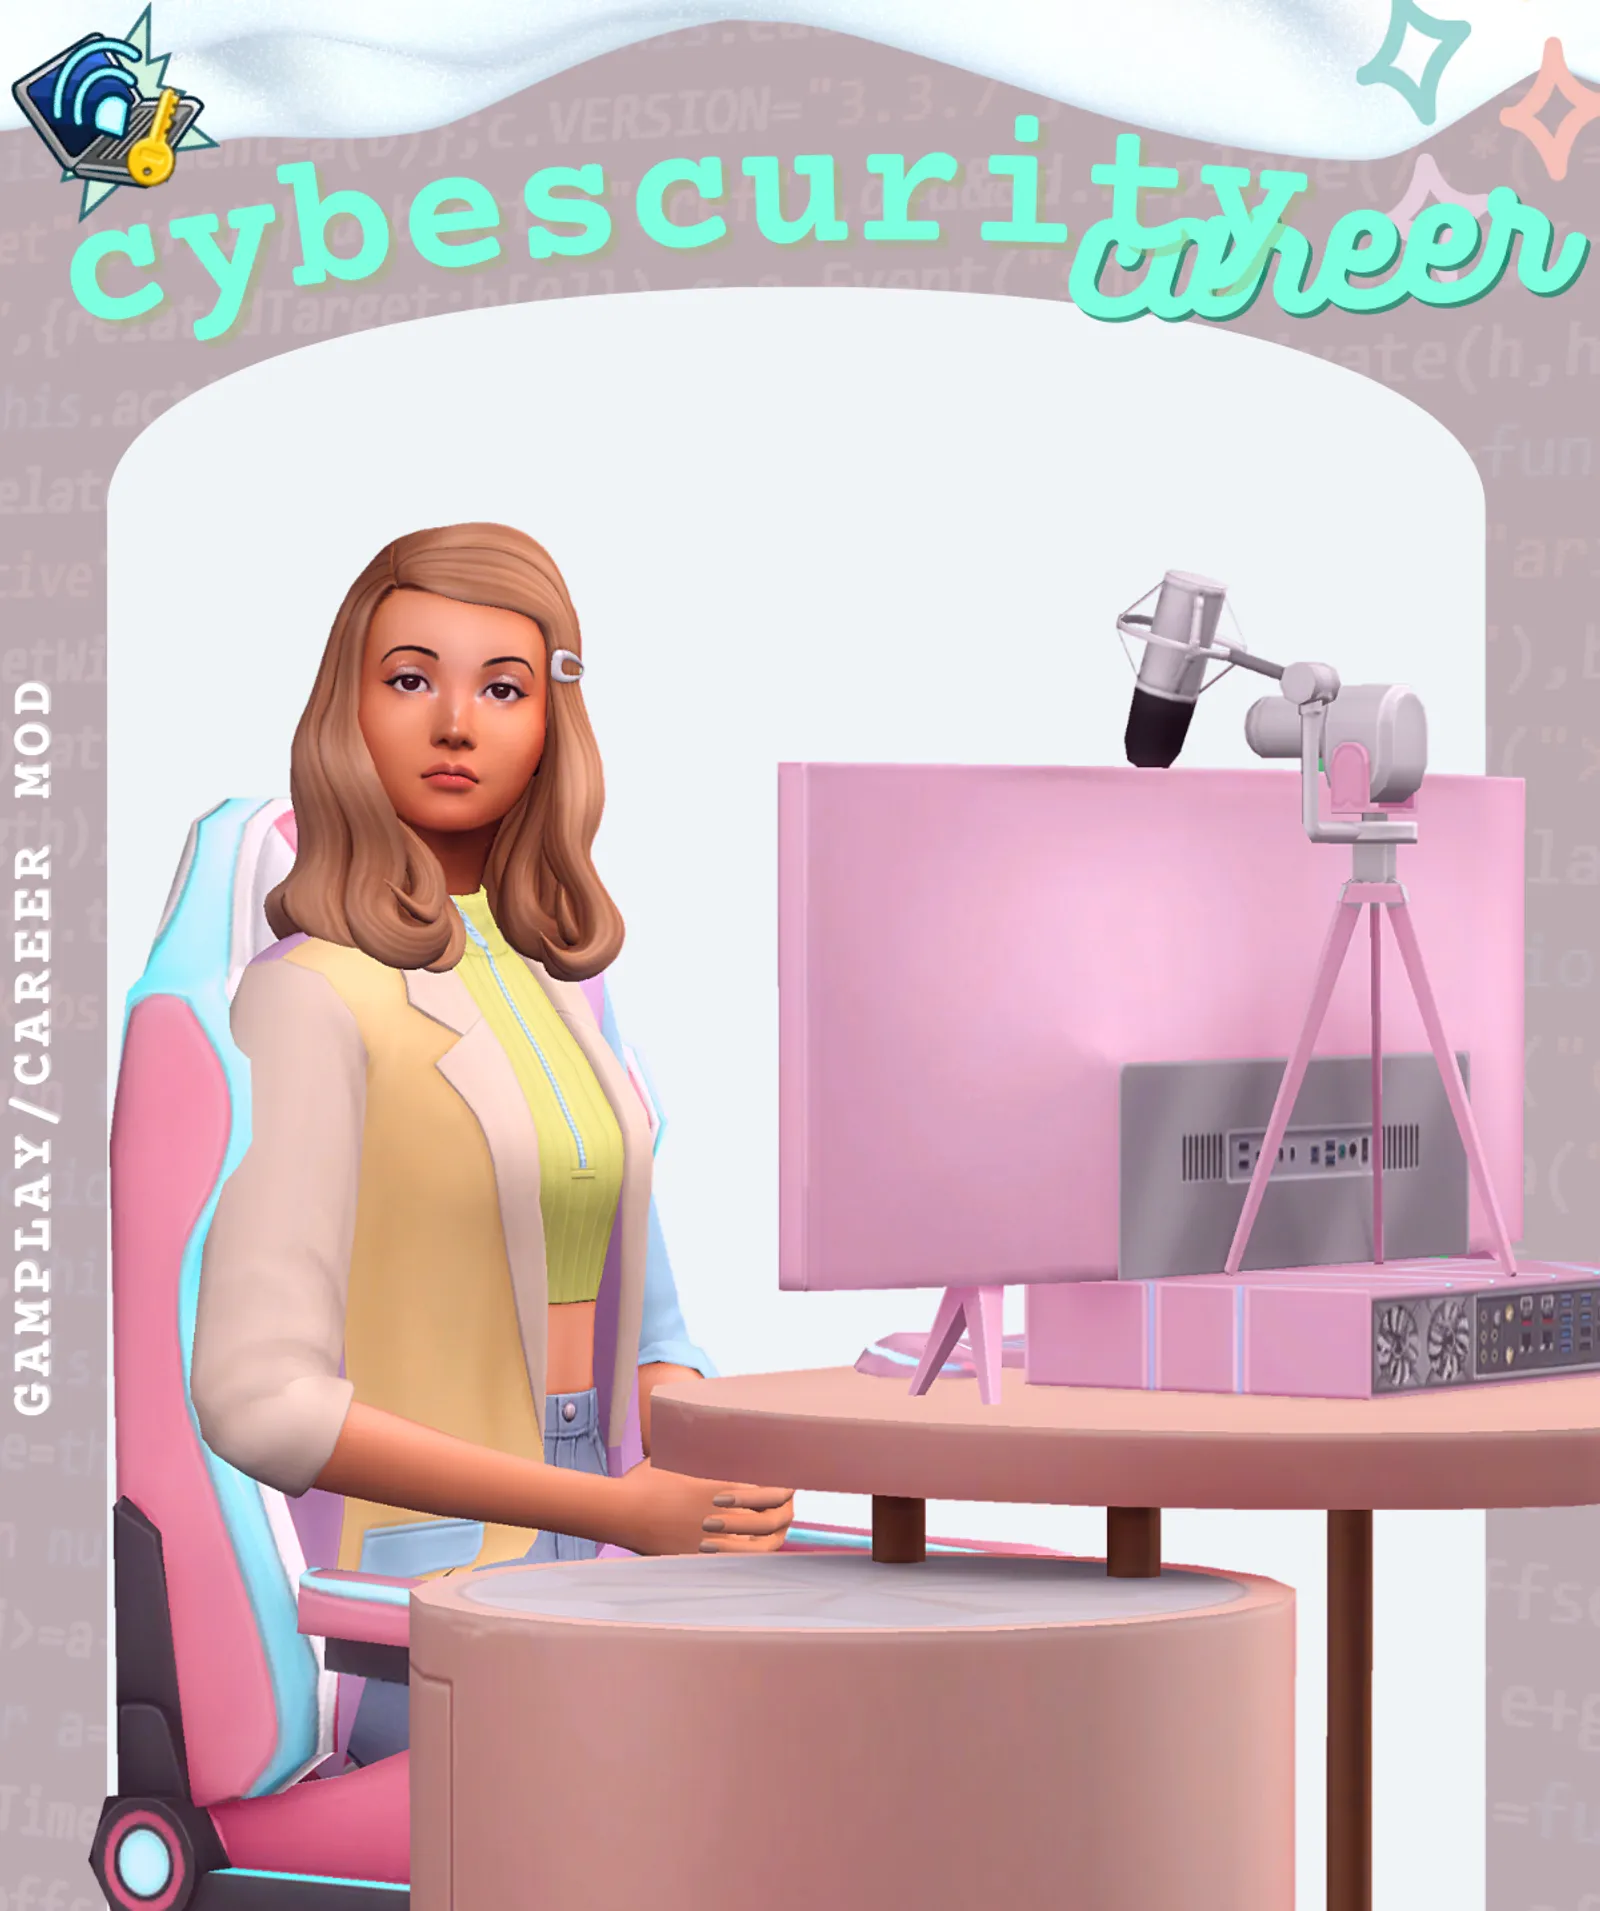 Cybersecurity Career Mod